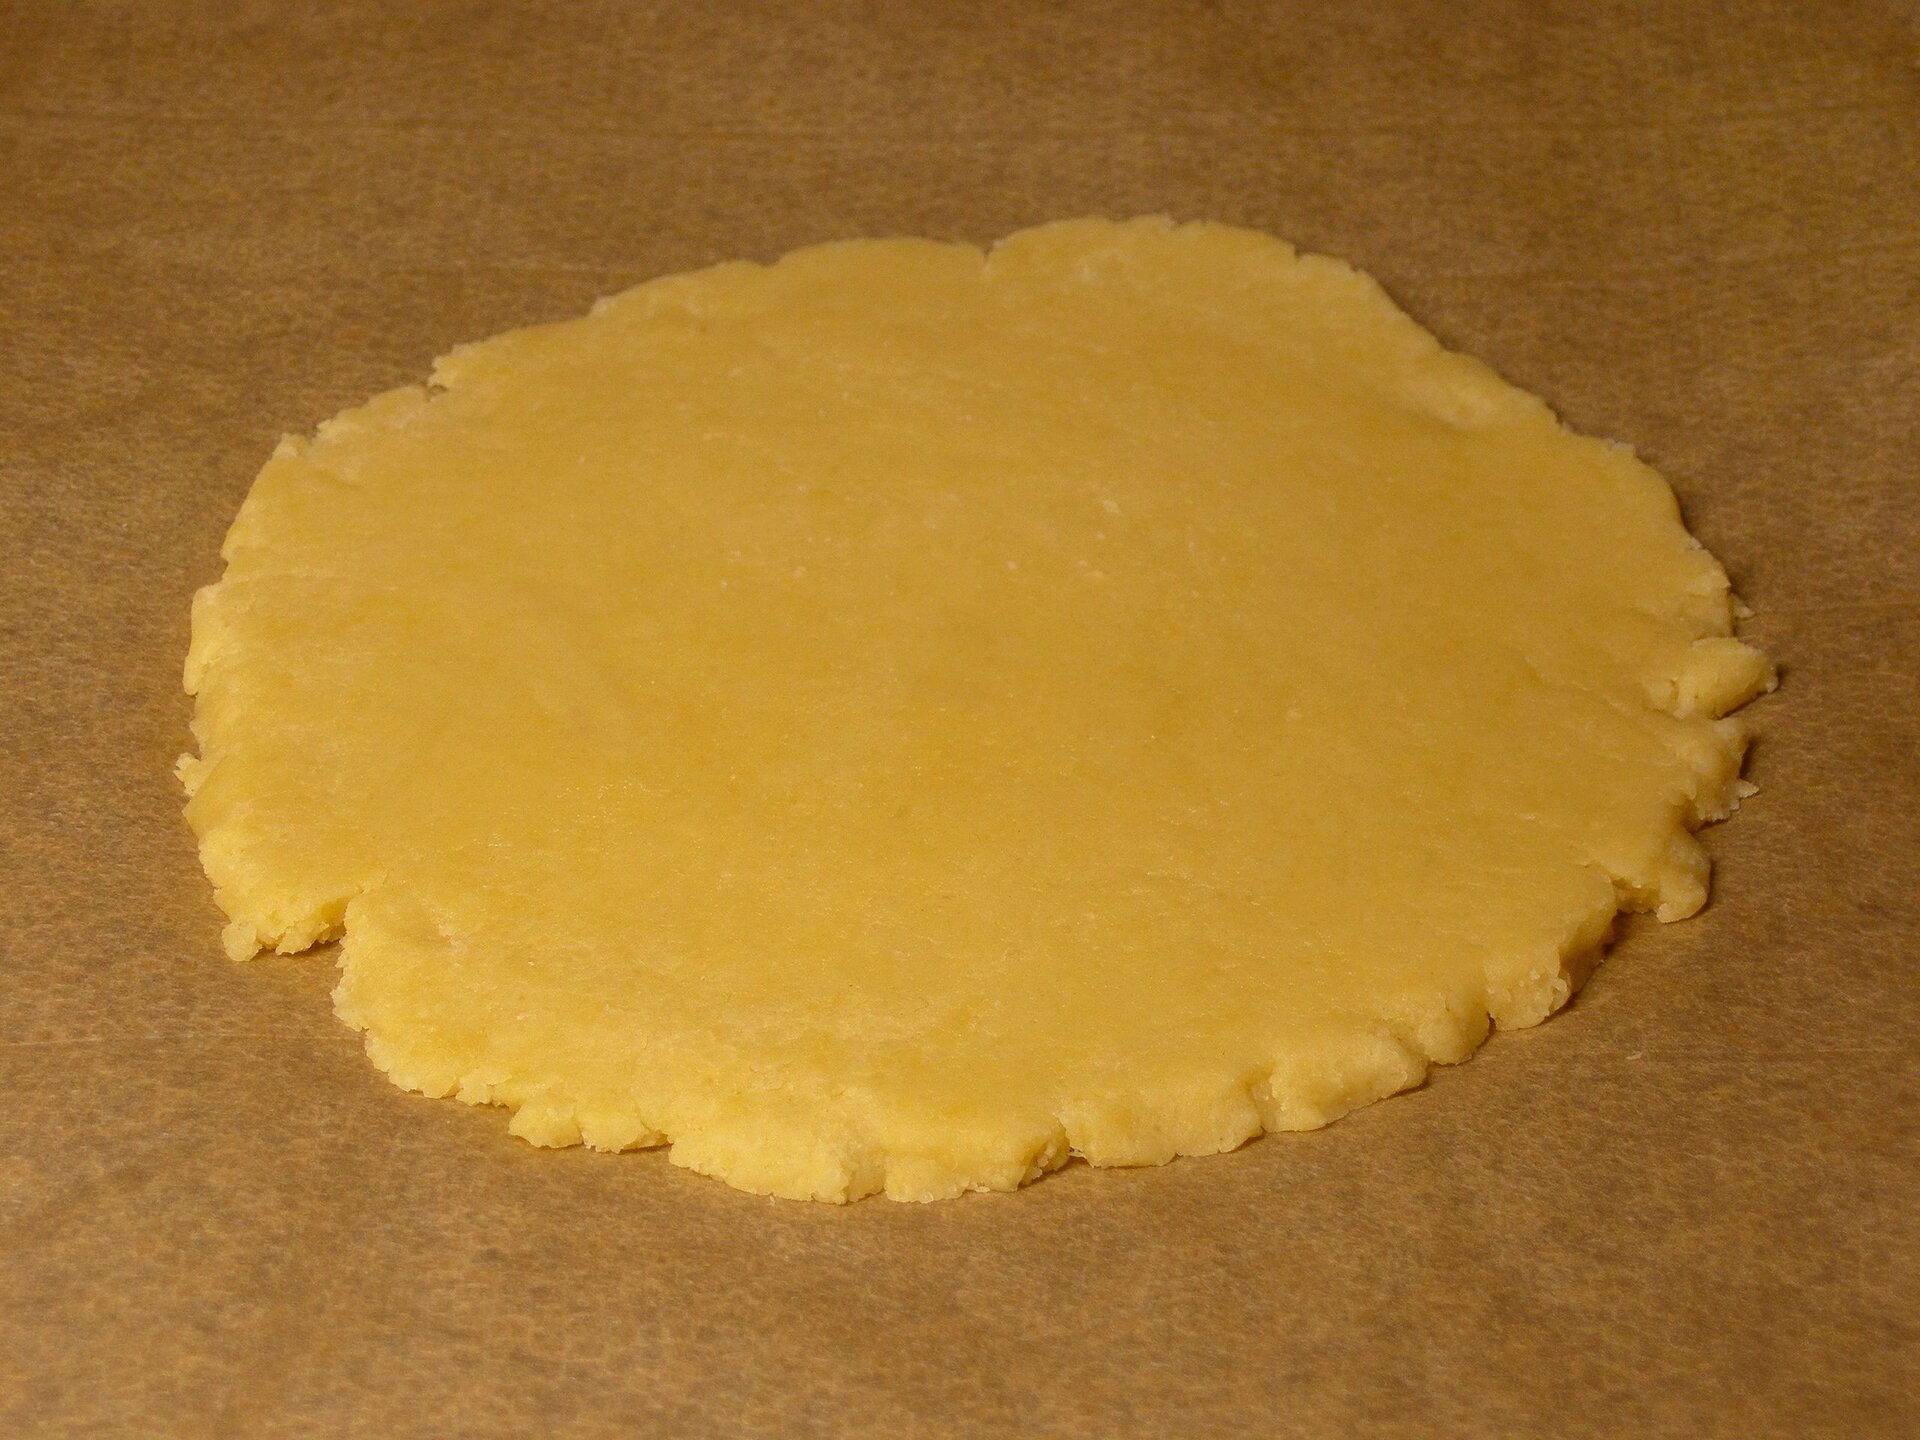 Na fotografii widać rozwałkowane ciasto kruche w formie okrągłego placka leżącego na brązowym papierze do pieczenia. Ciasto jest koloru żółtego. 